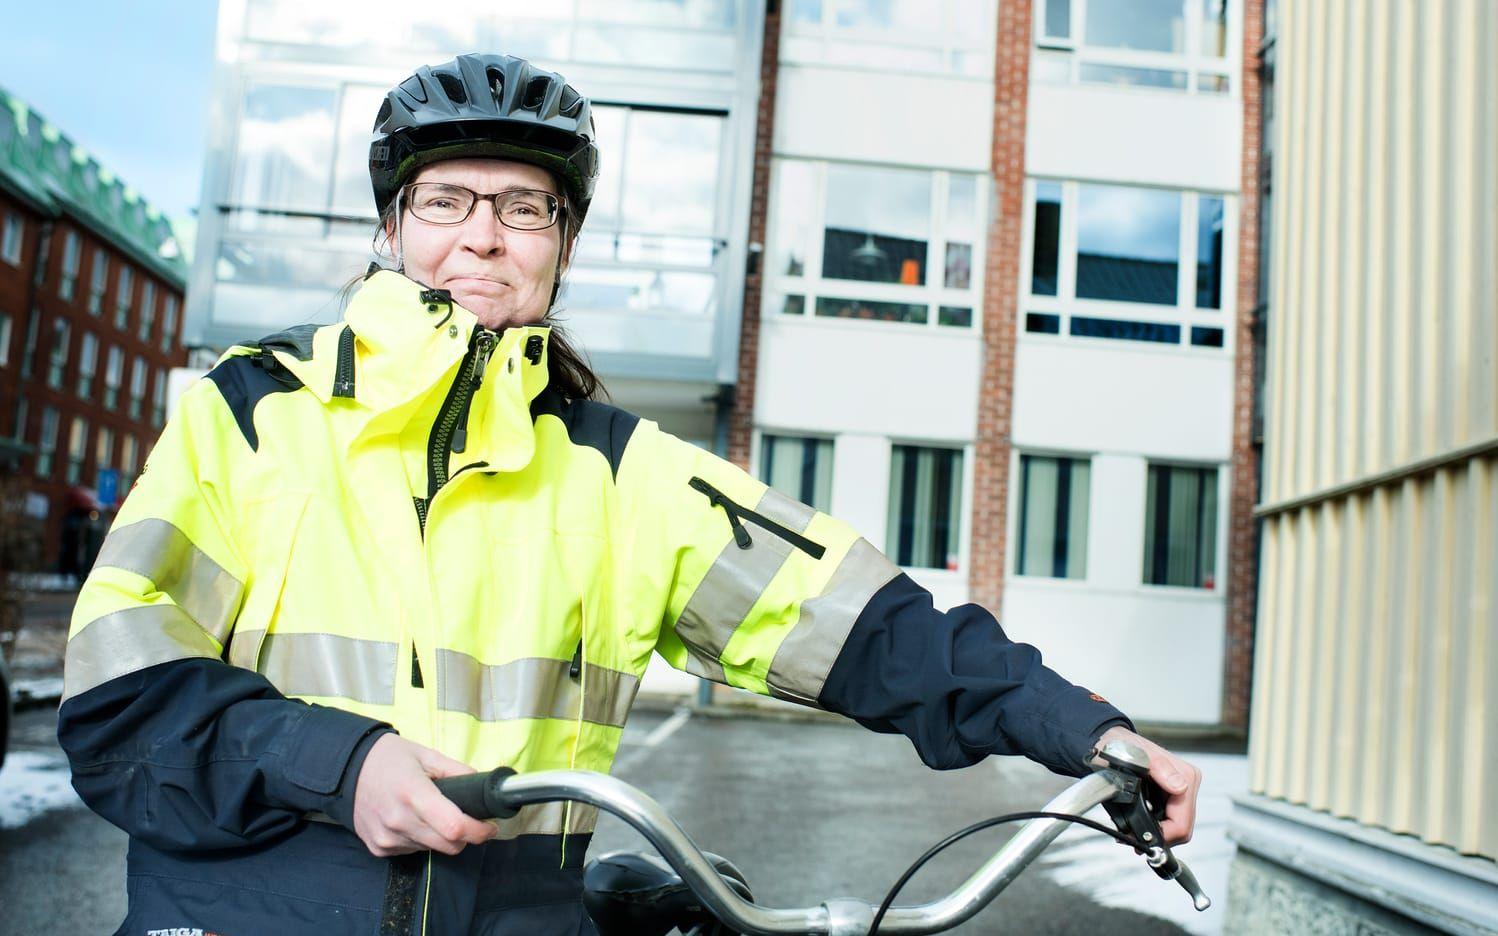 Gillar asfalt. Driftingenjör Anette Lomarker gillar att cykla på släta underlag. Det kommer hon snart att få göra. Under våren ska flera cykelbanor i centralorten få ny beläggning.